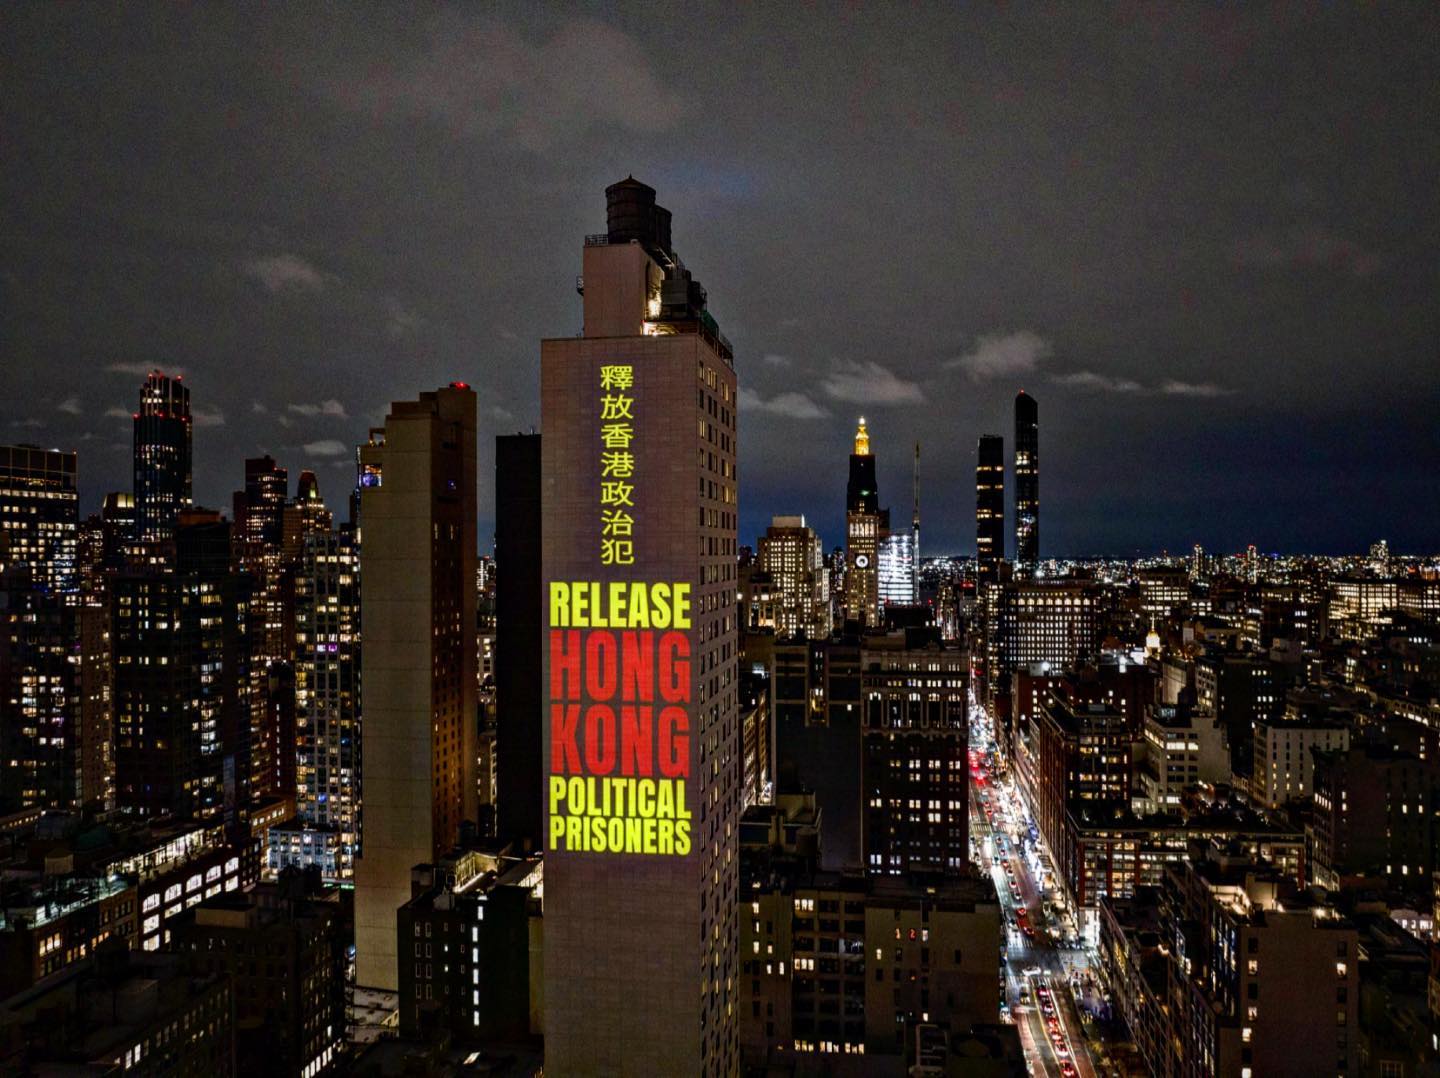 Màn trình chiếu quy mô lớn ở Manhattan, New York, hiển thị một thông điệp: ‘Trả tự do cho các tù nhân chính trị Hồng Kông’ bằng tiếng Trung và tiếng Anh, vào đêm trước ngày 08/03/2023. (Ảnh: Đăng dưới sự cho phép của Tổ chức Ủy ban vì Tự do ở Hồng Kông)